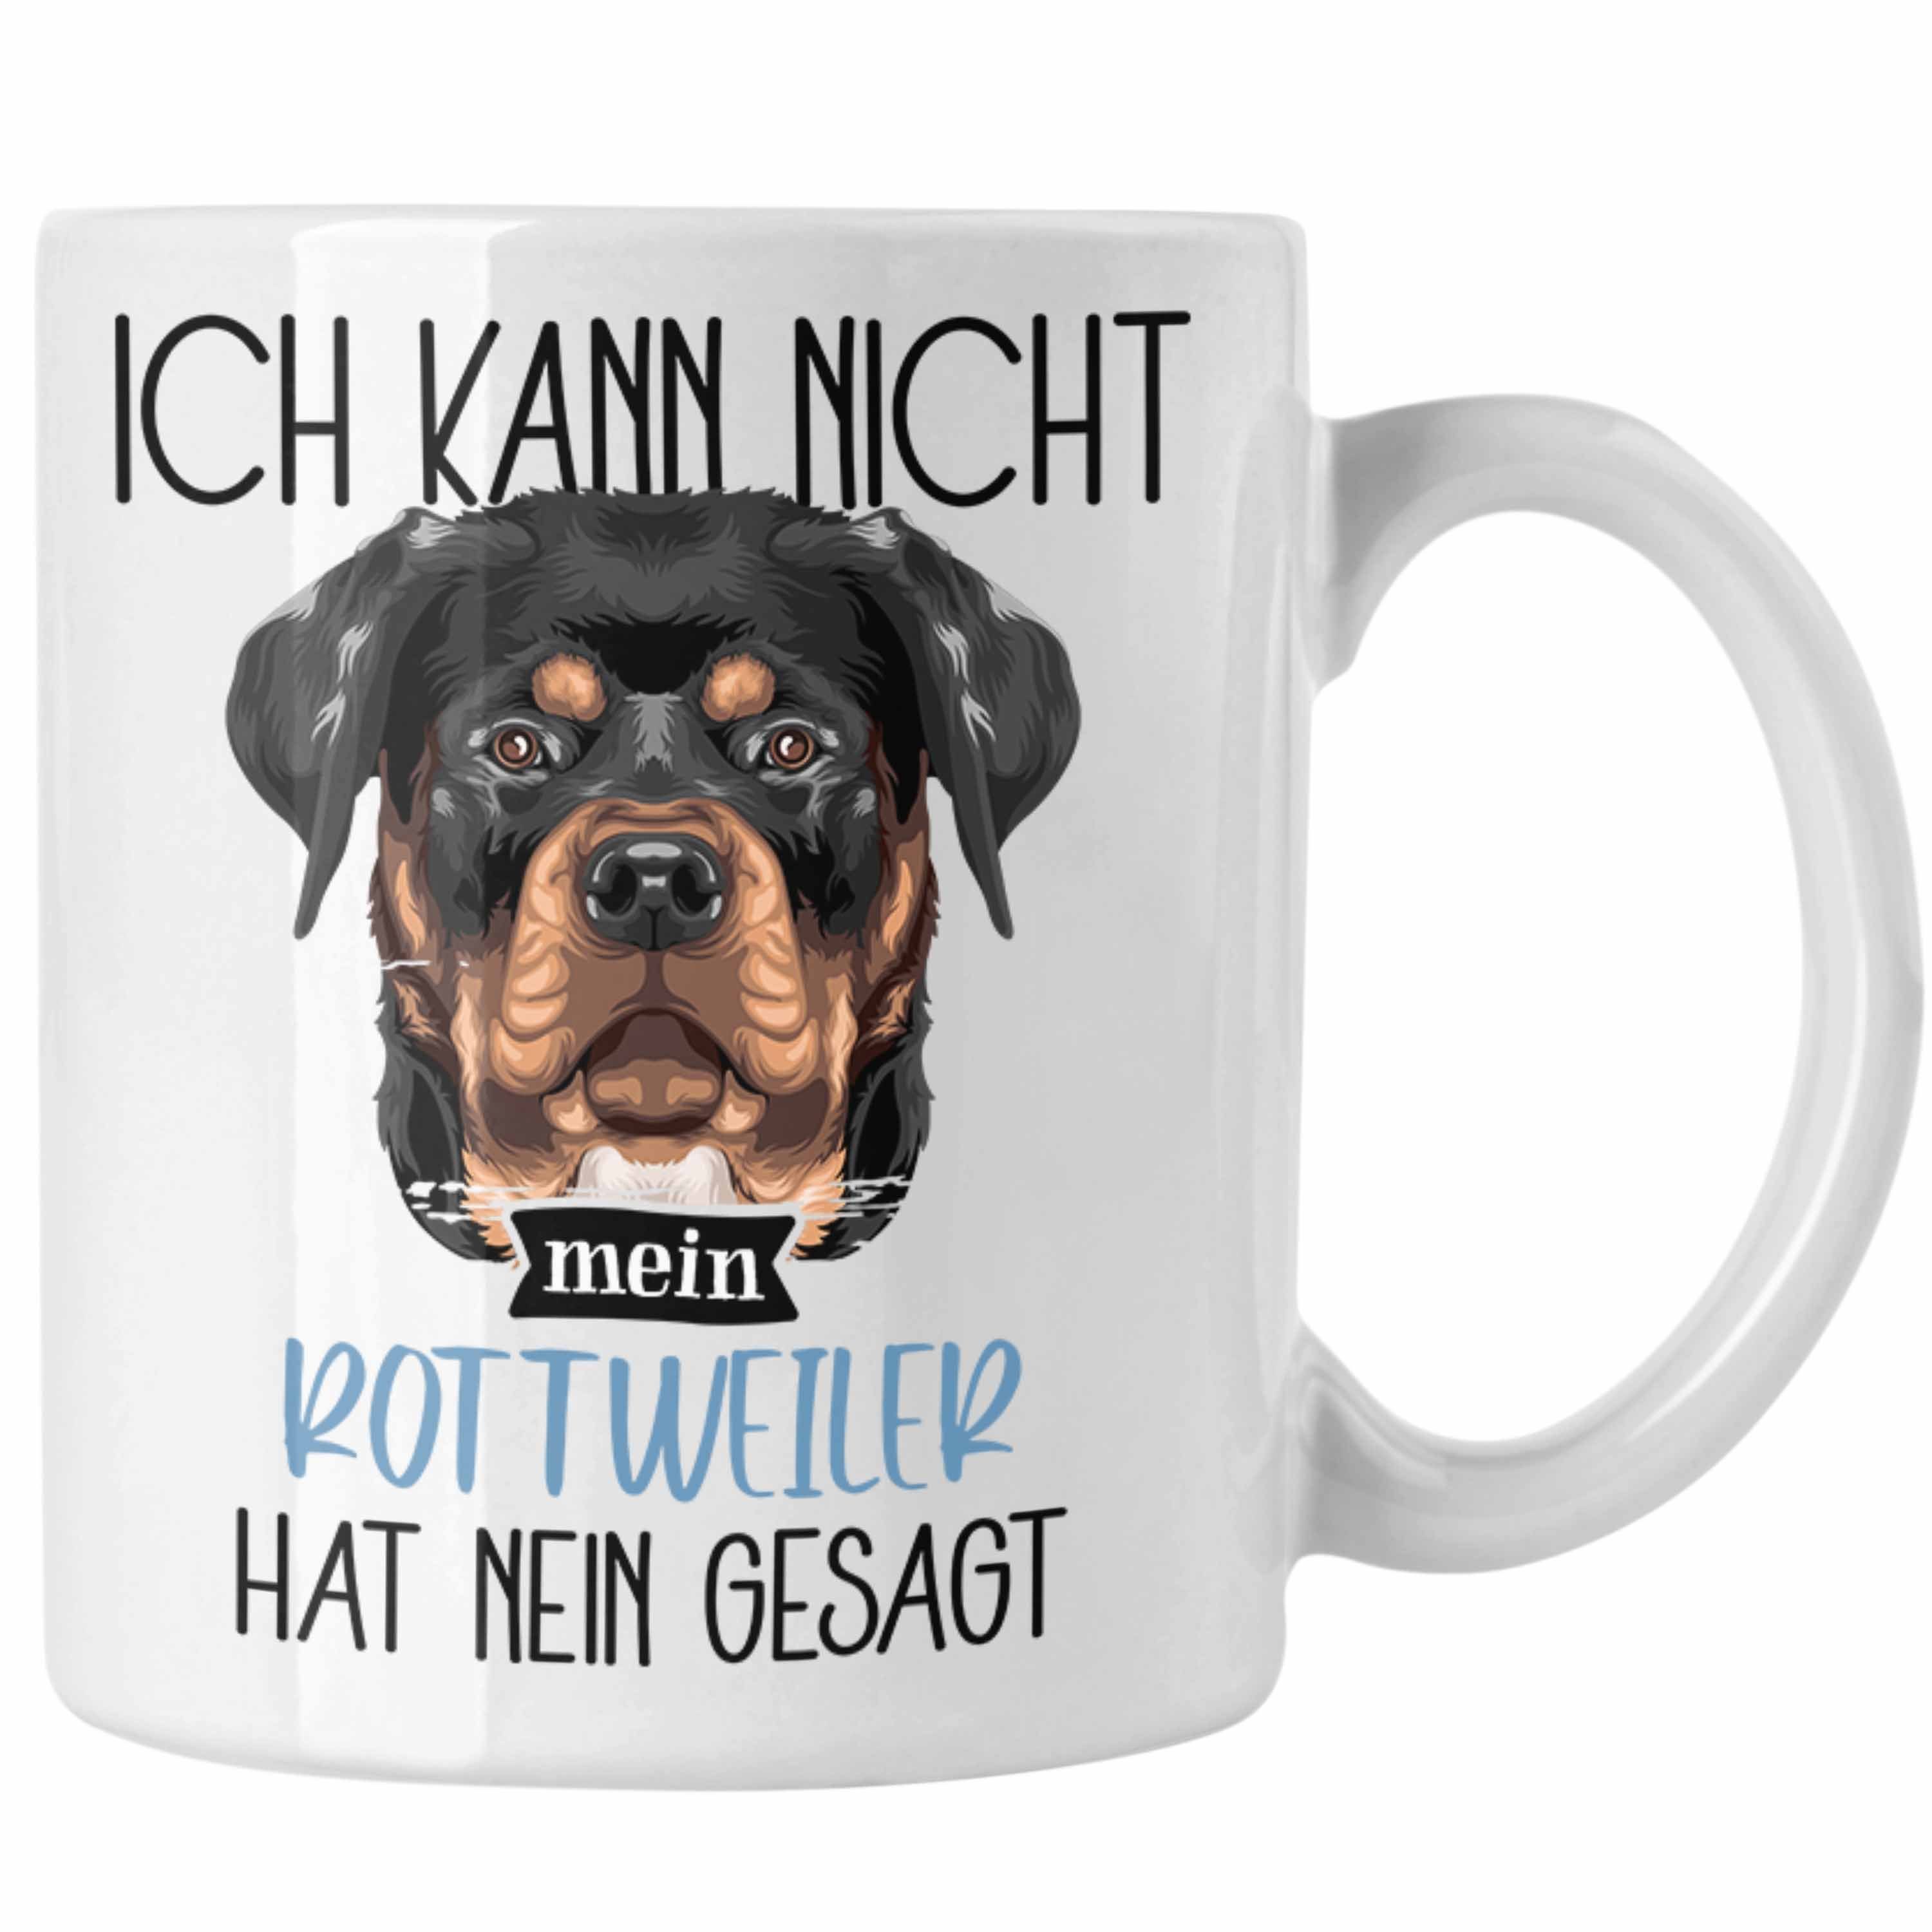 Trendation Tasse Rottweiler Tasse Spruch Ka Ich Besitzer Weiss Lustiger Geschenkidee Geschenk